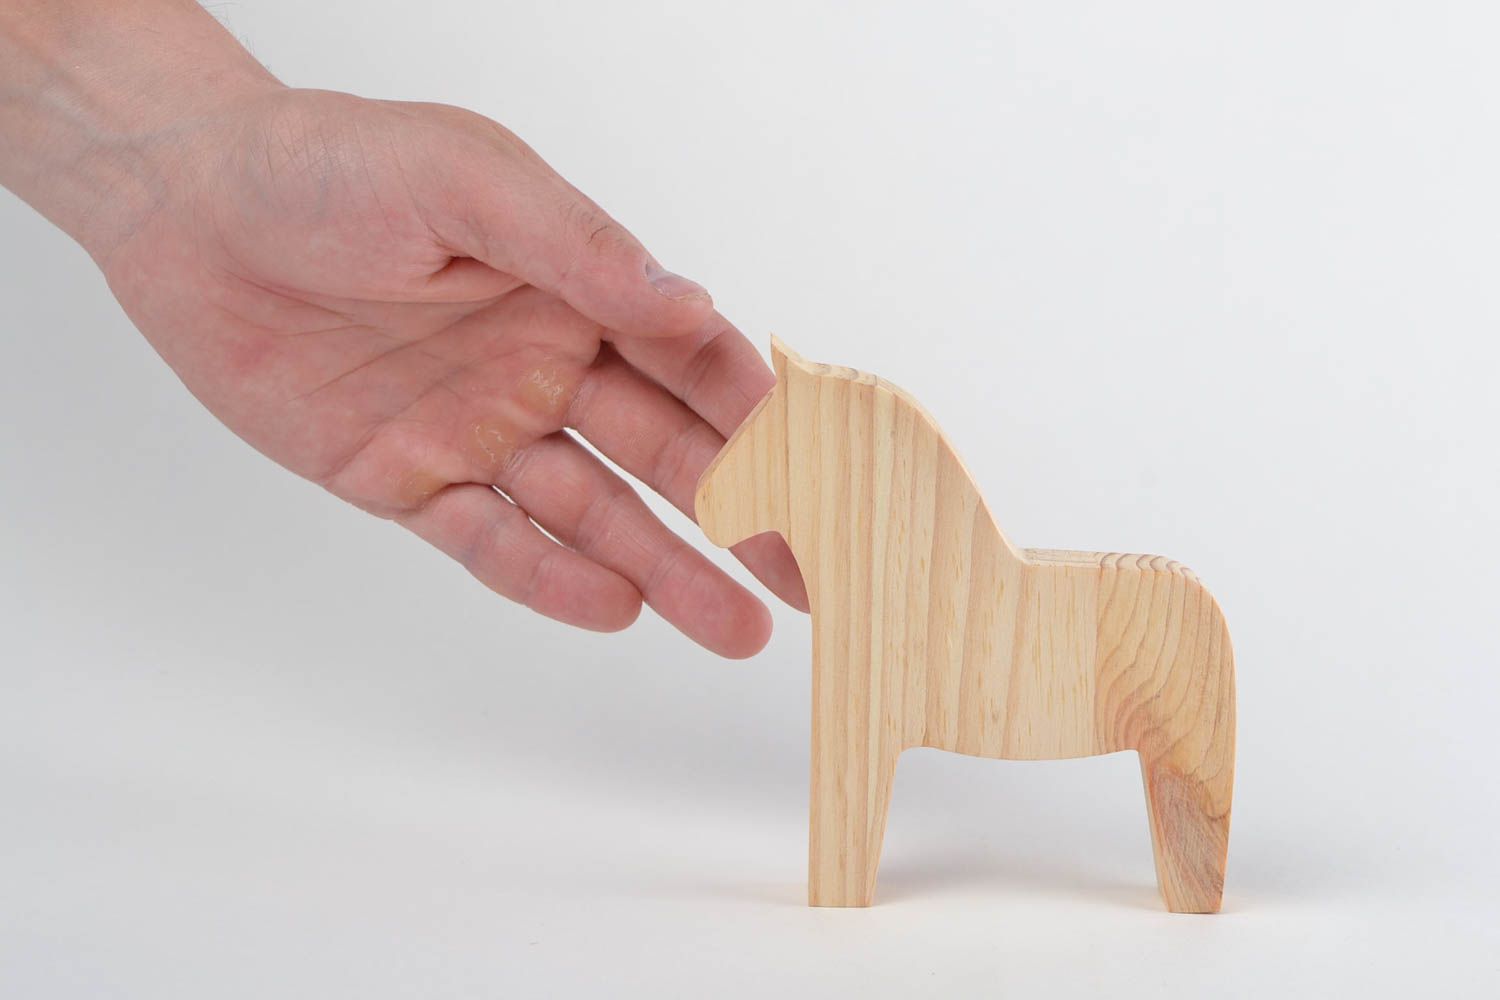 Игрушка из дерева ручной работы лошадка светлая маленького размера для детей фото 2